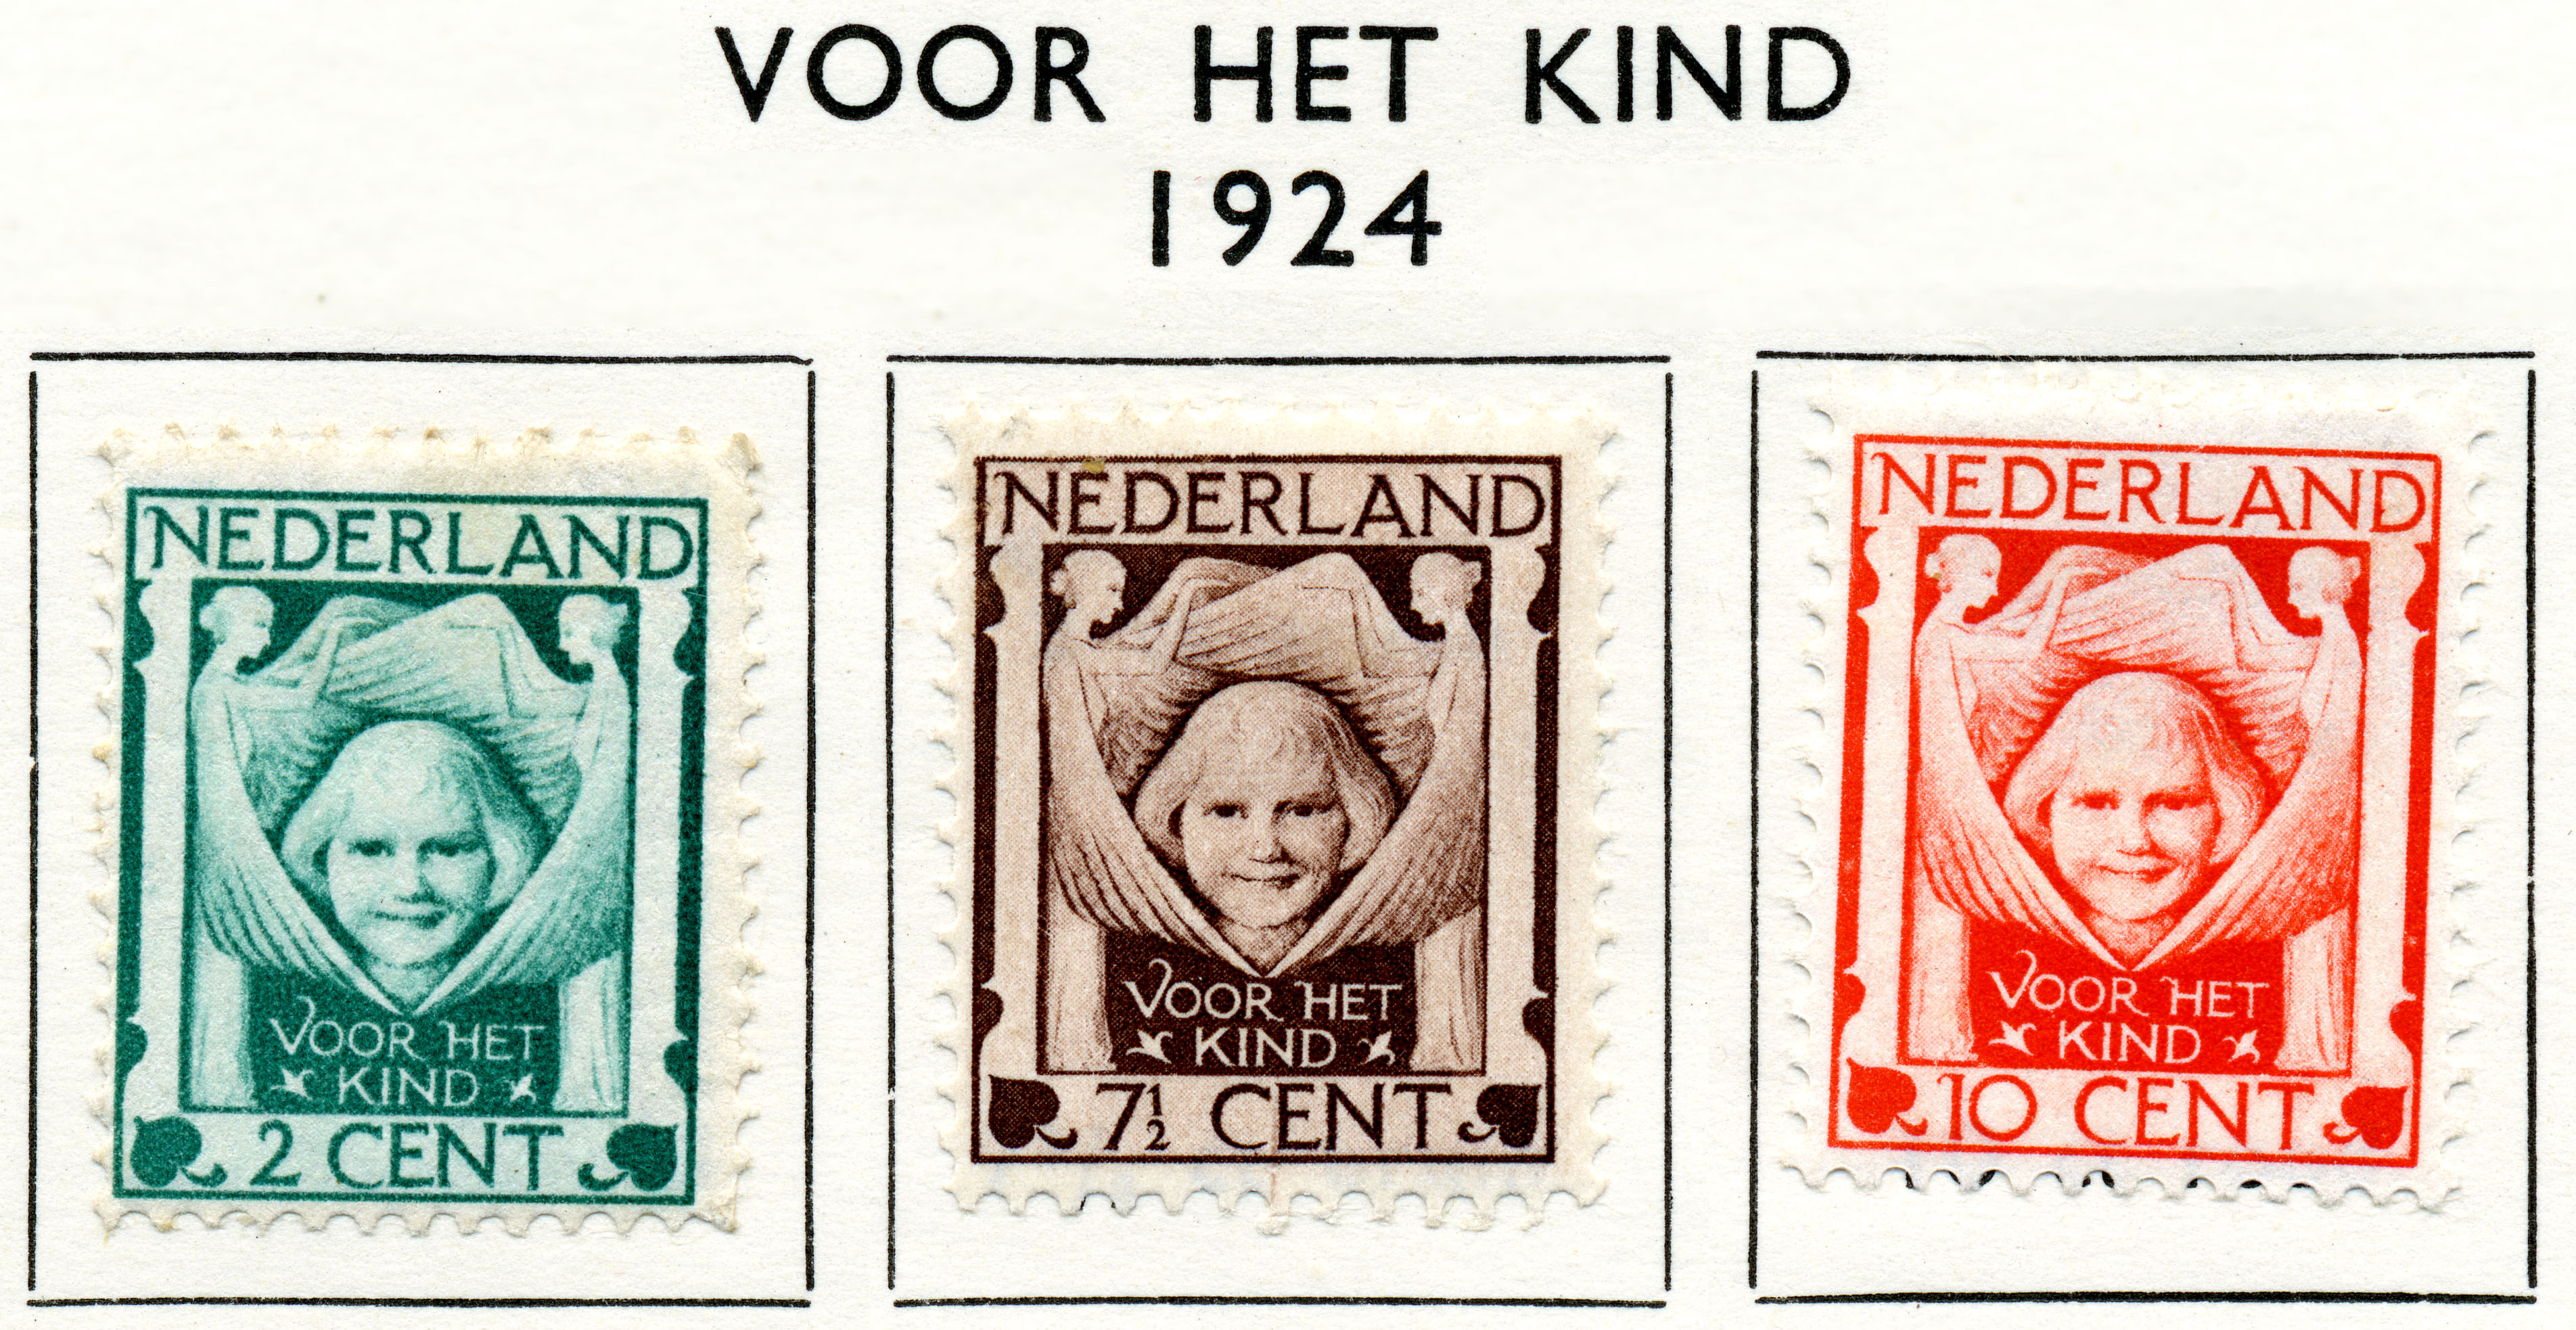 Postzegel 1924 voor het kind